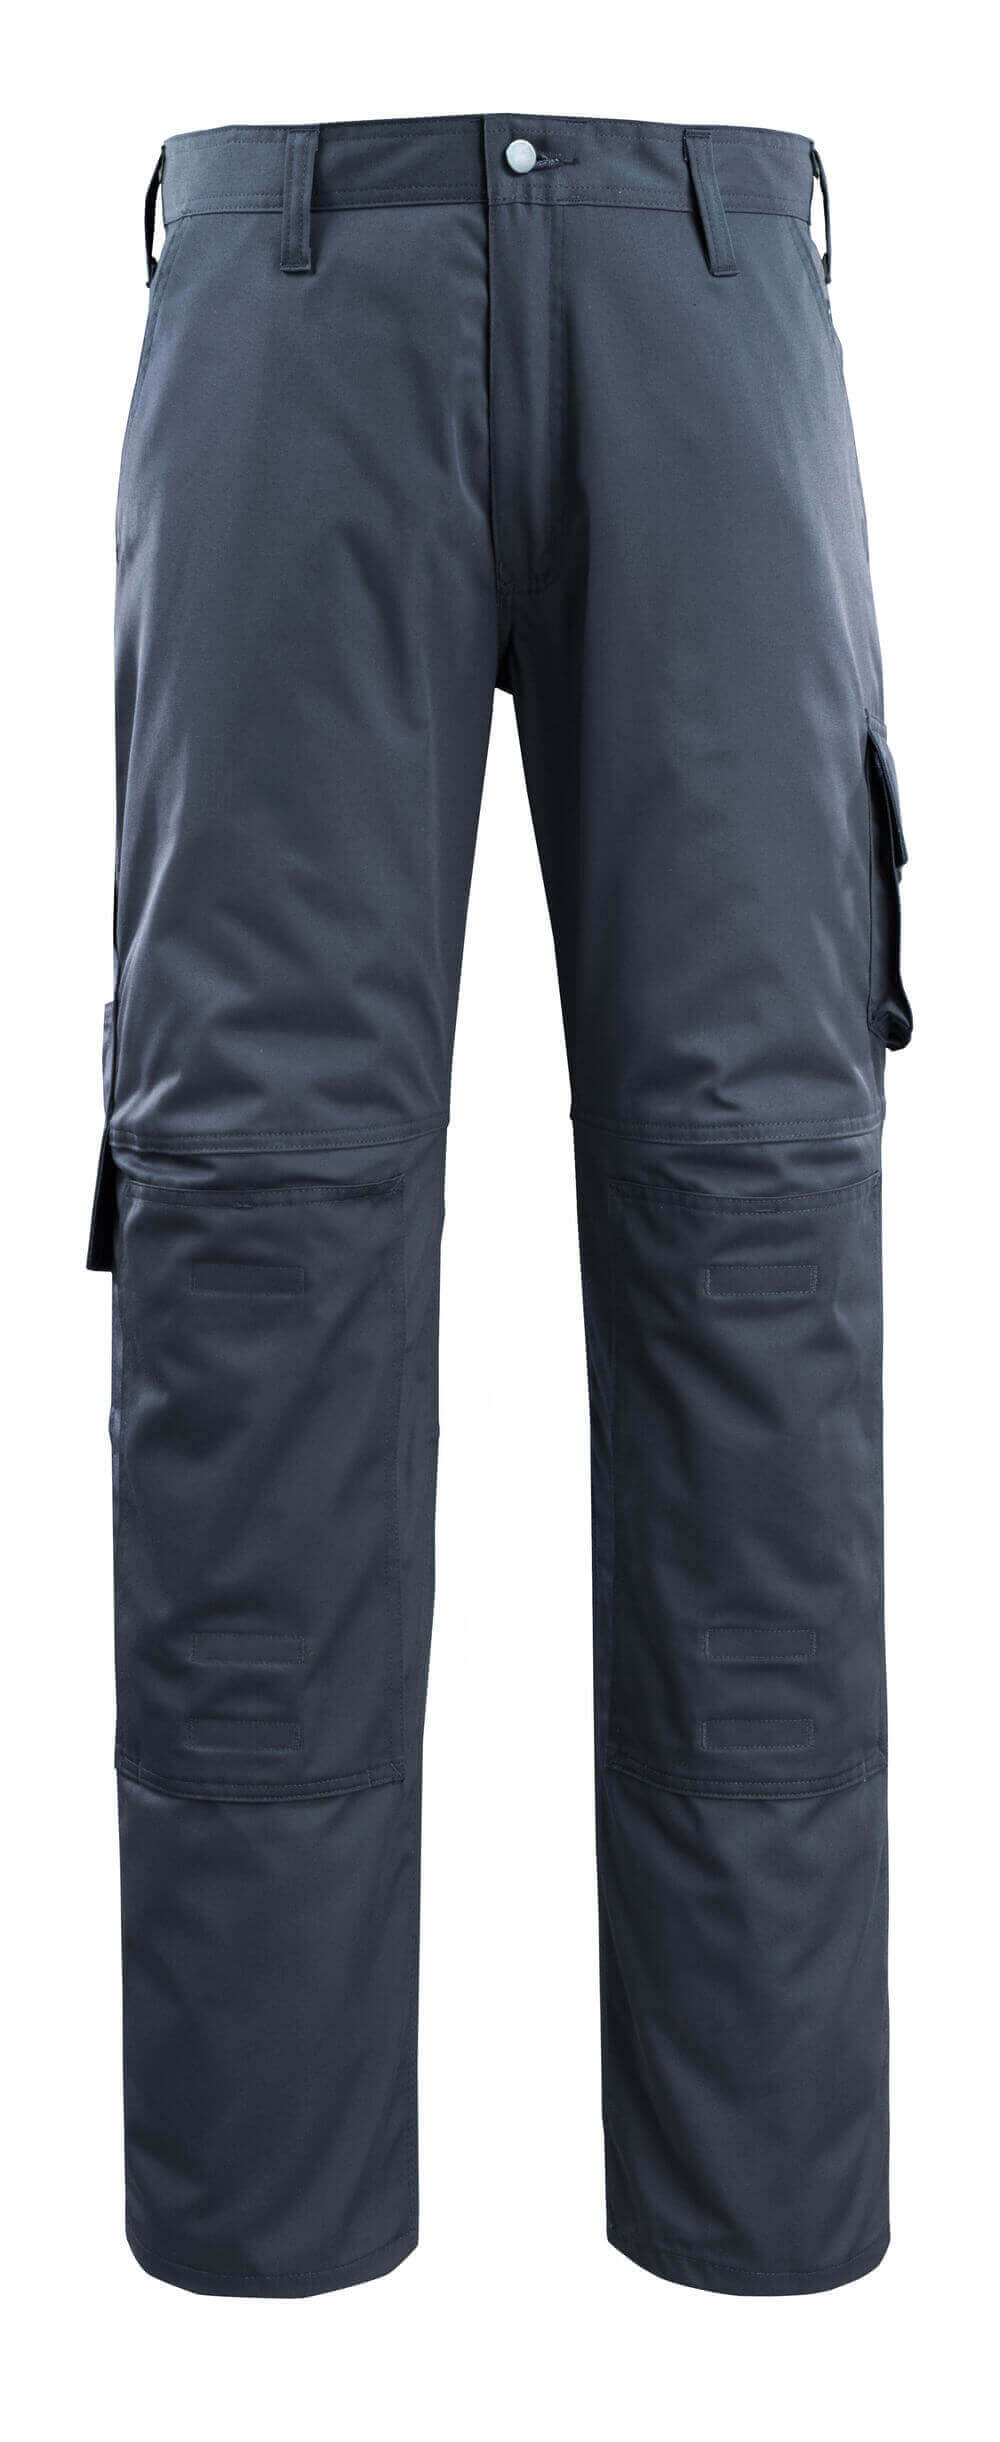 Hose mit Knietaschen WORKWEAR Hose mit Knietaschen in Farbe Schwarzblau